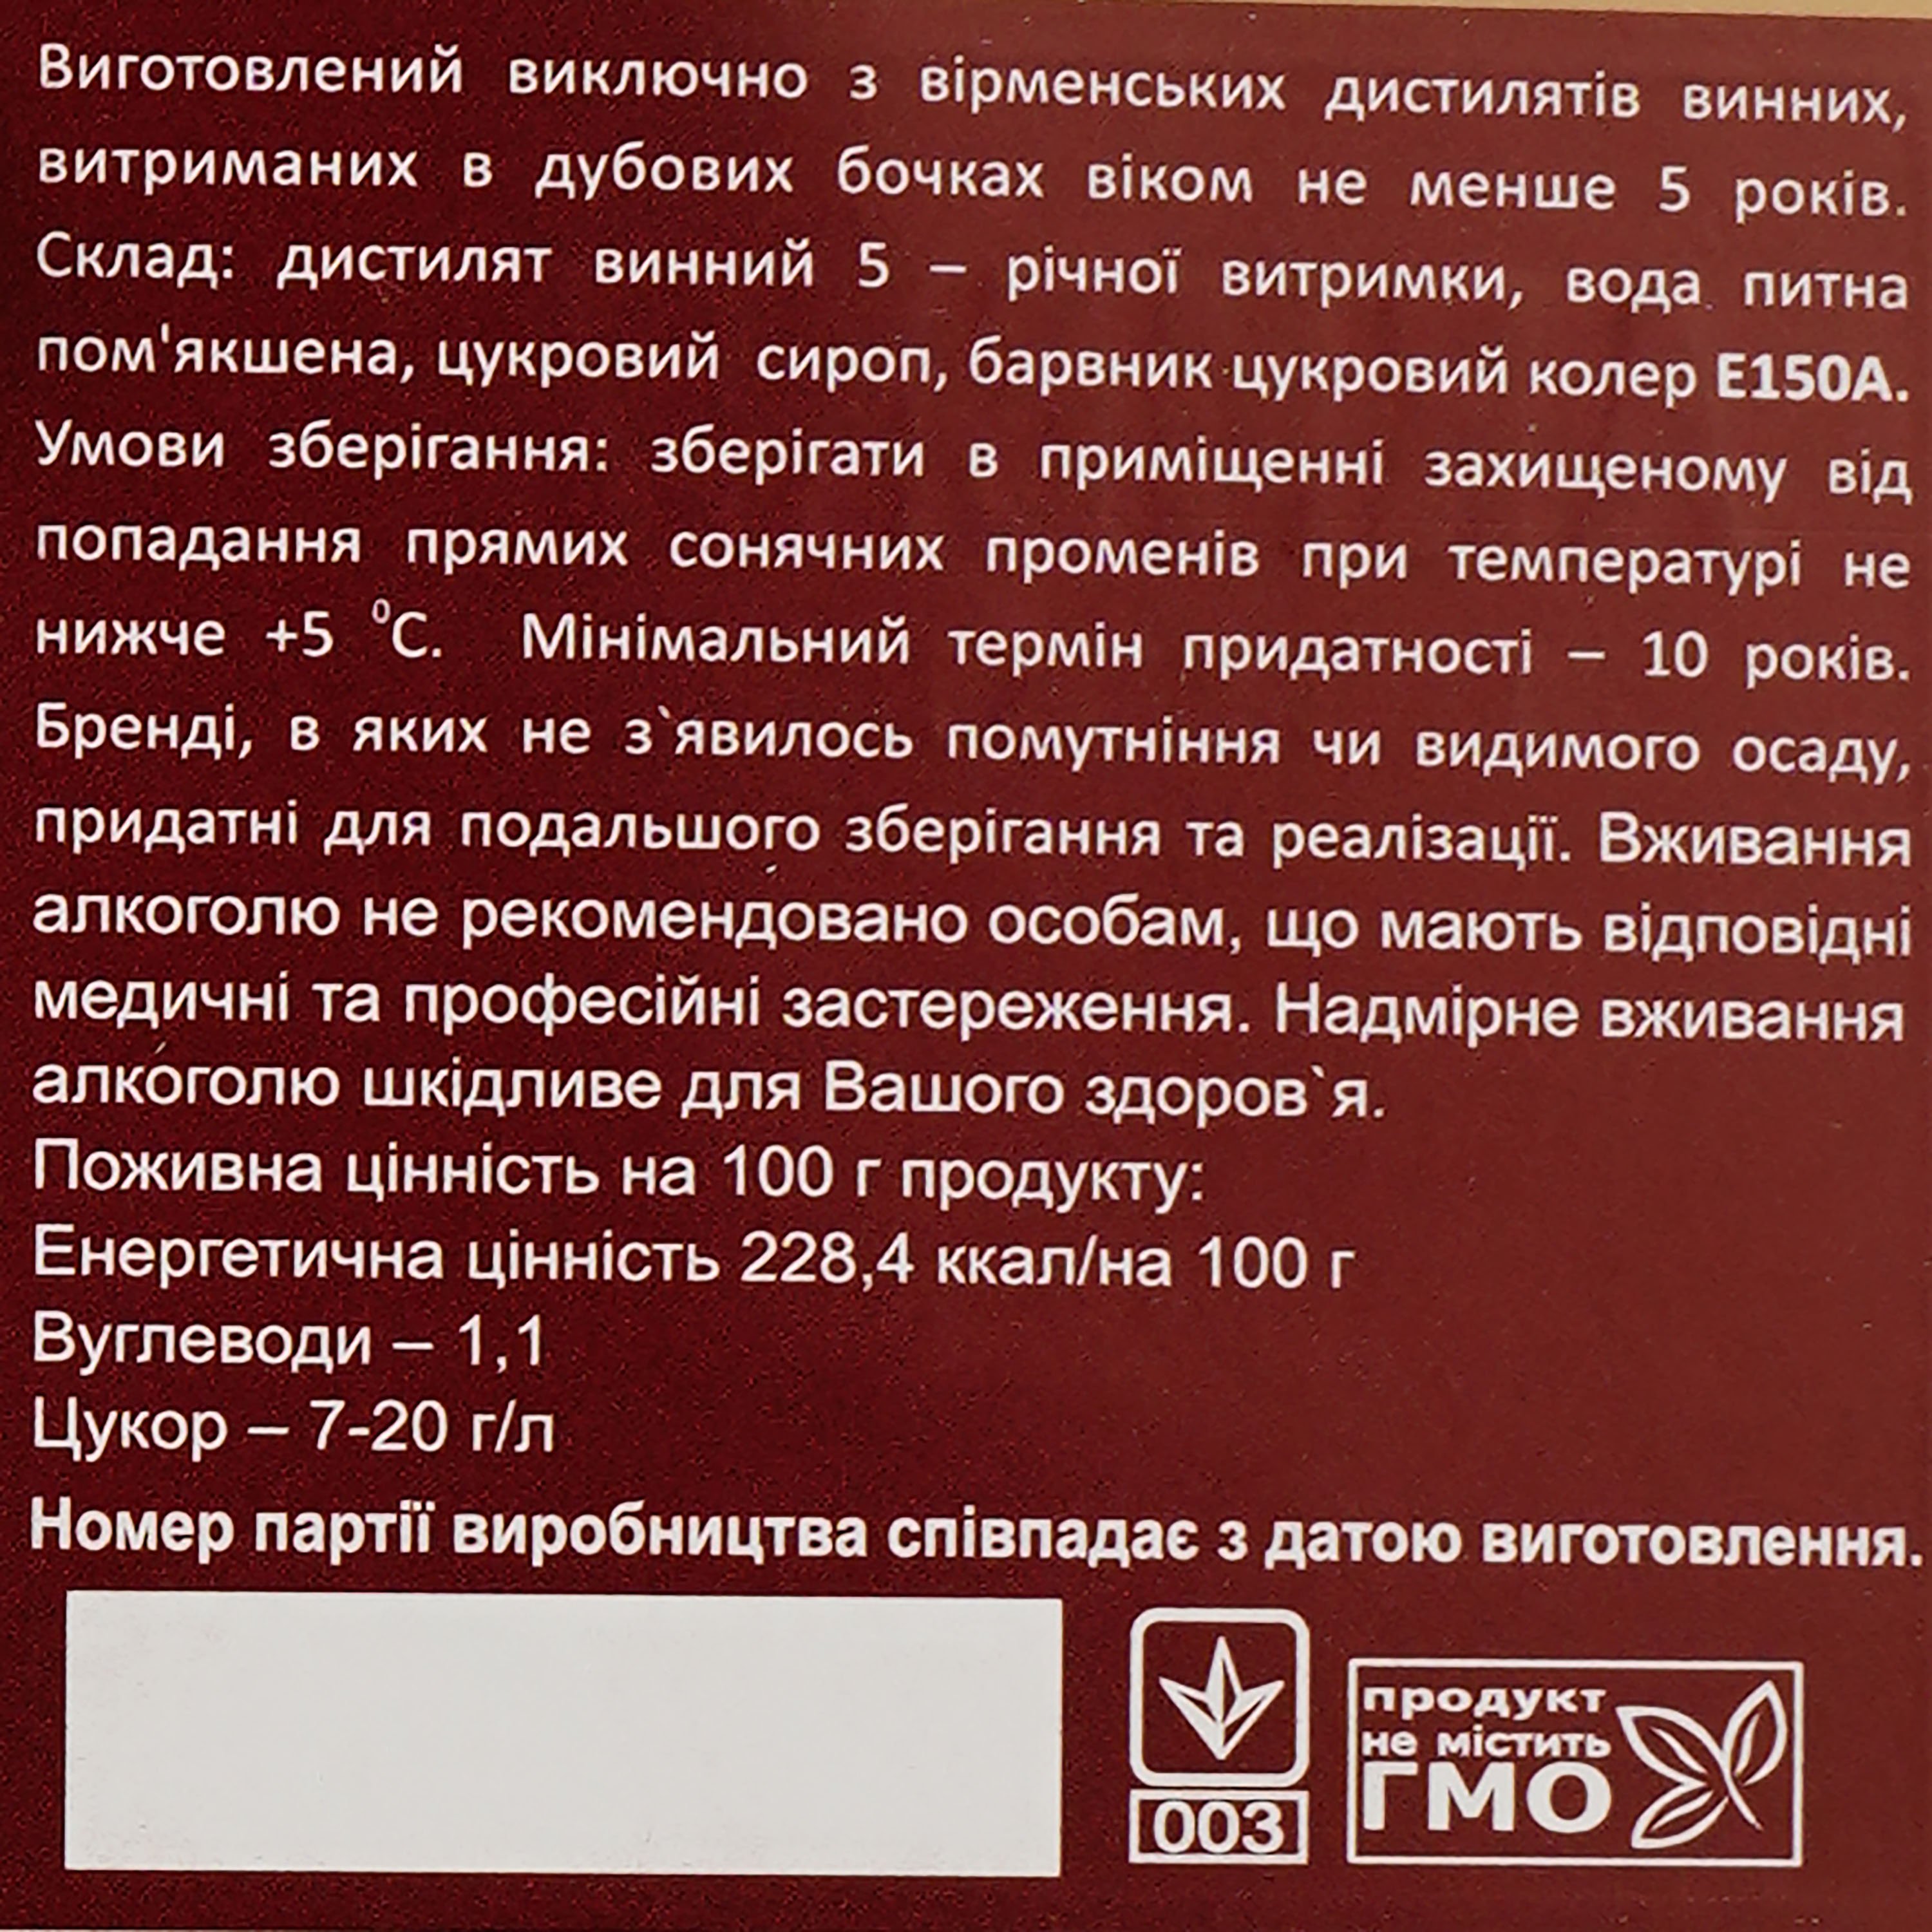 Бренди Вірменський Булава, 5 років витримки, 40%, 0,5 л, у подарунковій коробці - фото 3